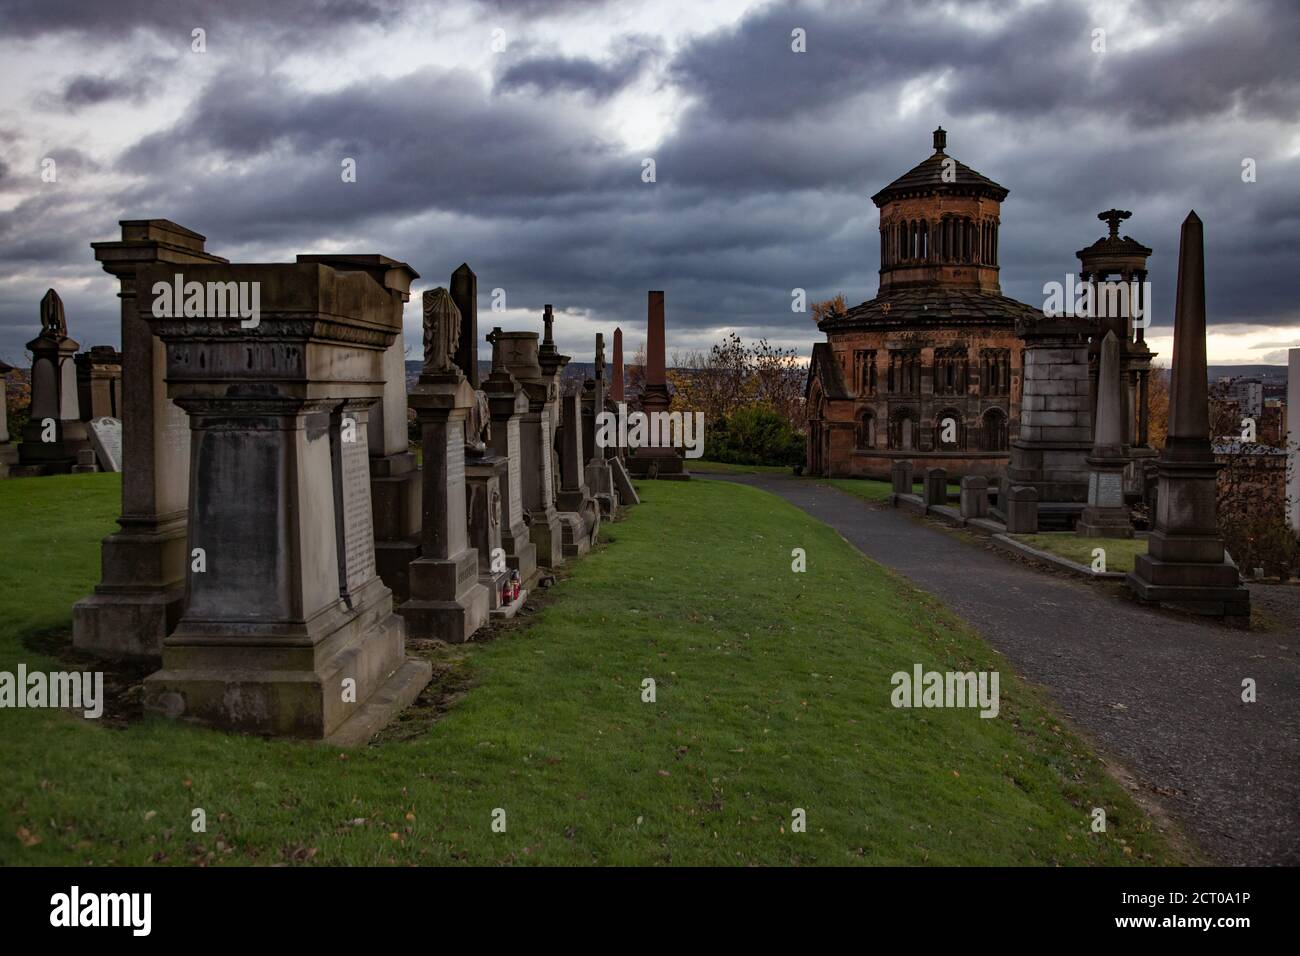 Glasgow/Écosse - 13 novembre 2013 : la colline de la nécropole de Glasgow en mauvais temps. Monuments graves et mausolée. Herbe verte et arbres jaunes. Nuages de tempête gris. Banque D'Images